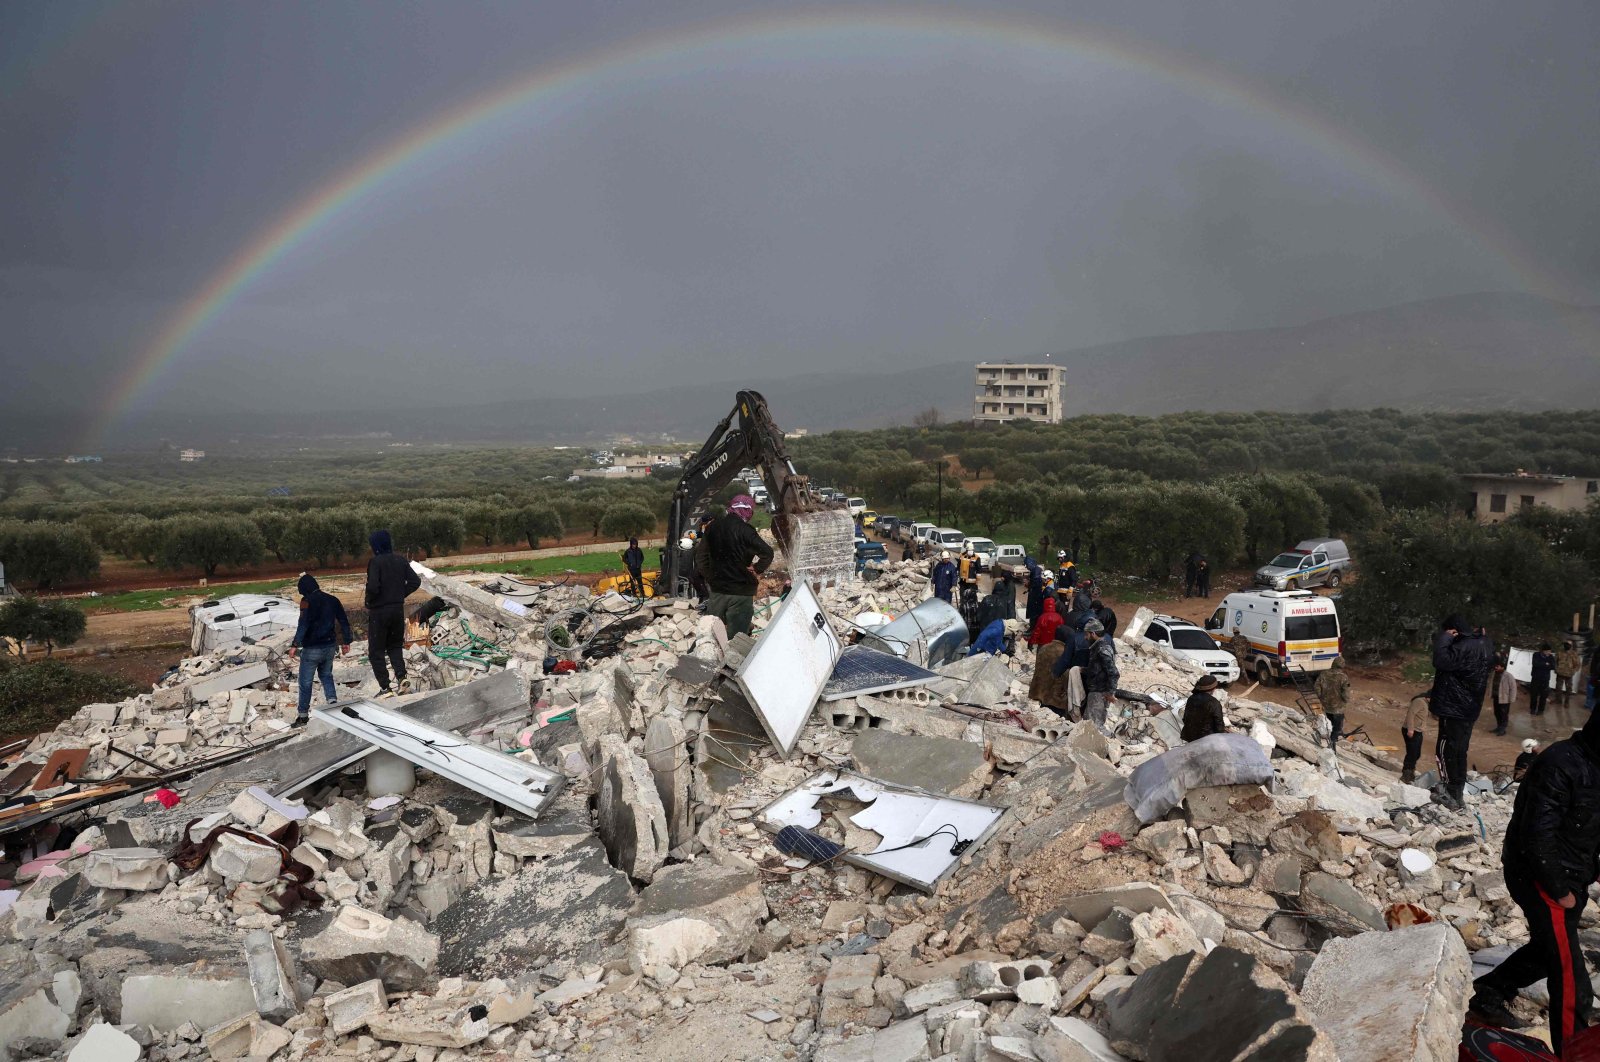 Seruan untuk bantuan karena korban tewas akibat gempa di Suriah melewati 1.400